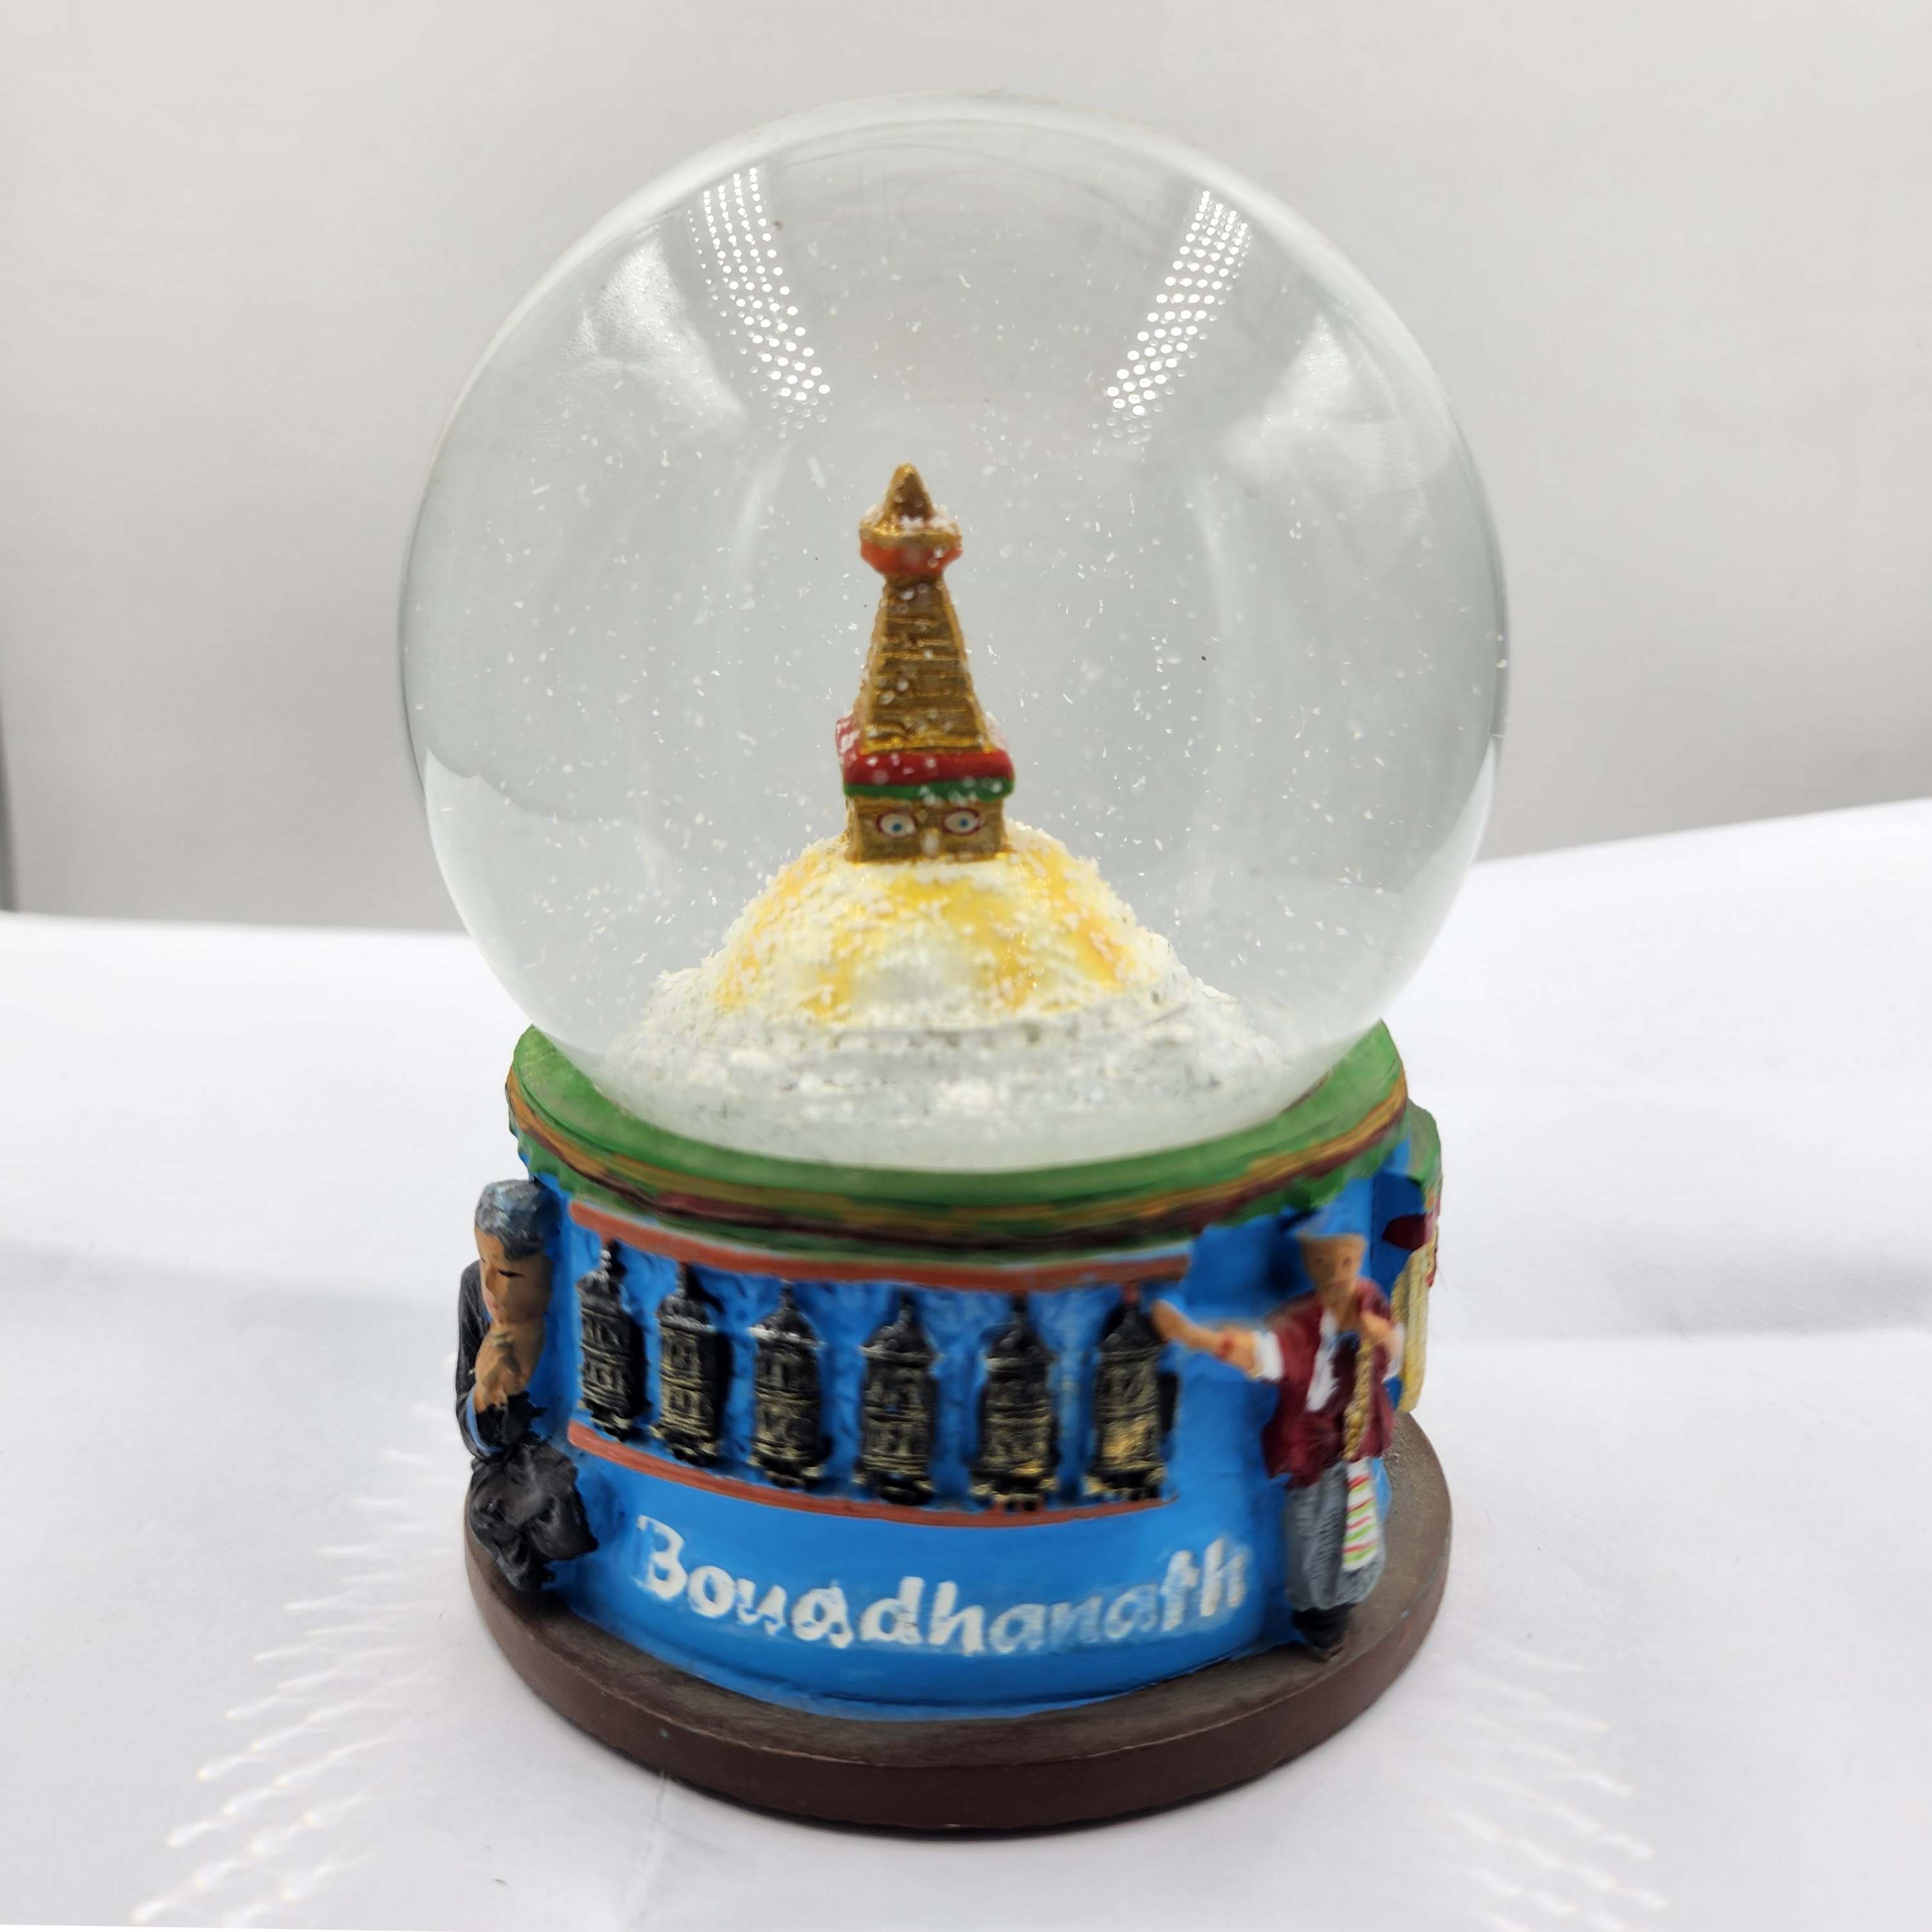 Water Globe Of swayambhunath, Replica Of The Ancient Religious Stupa Of Nepal